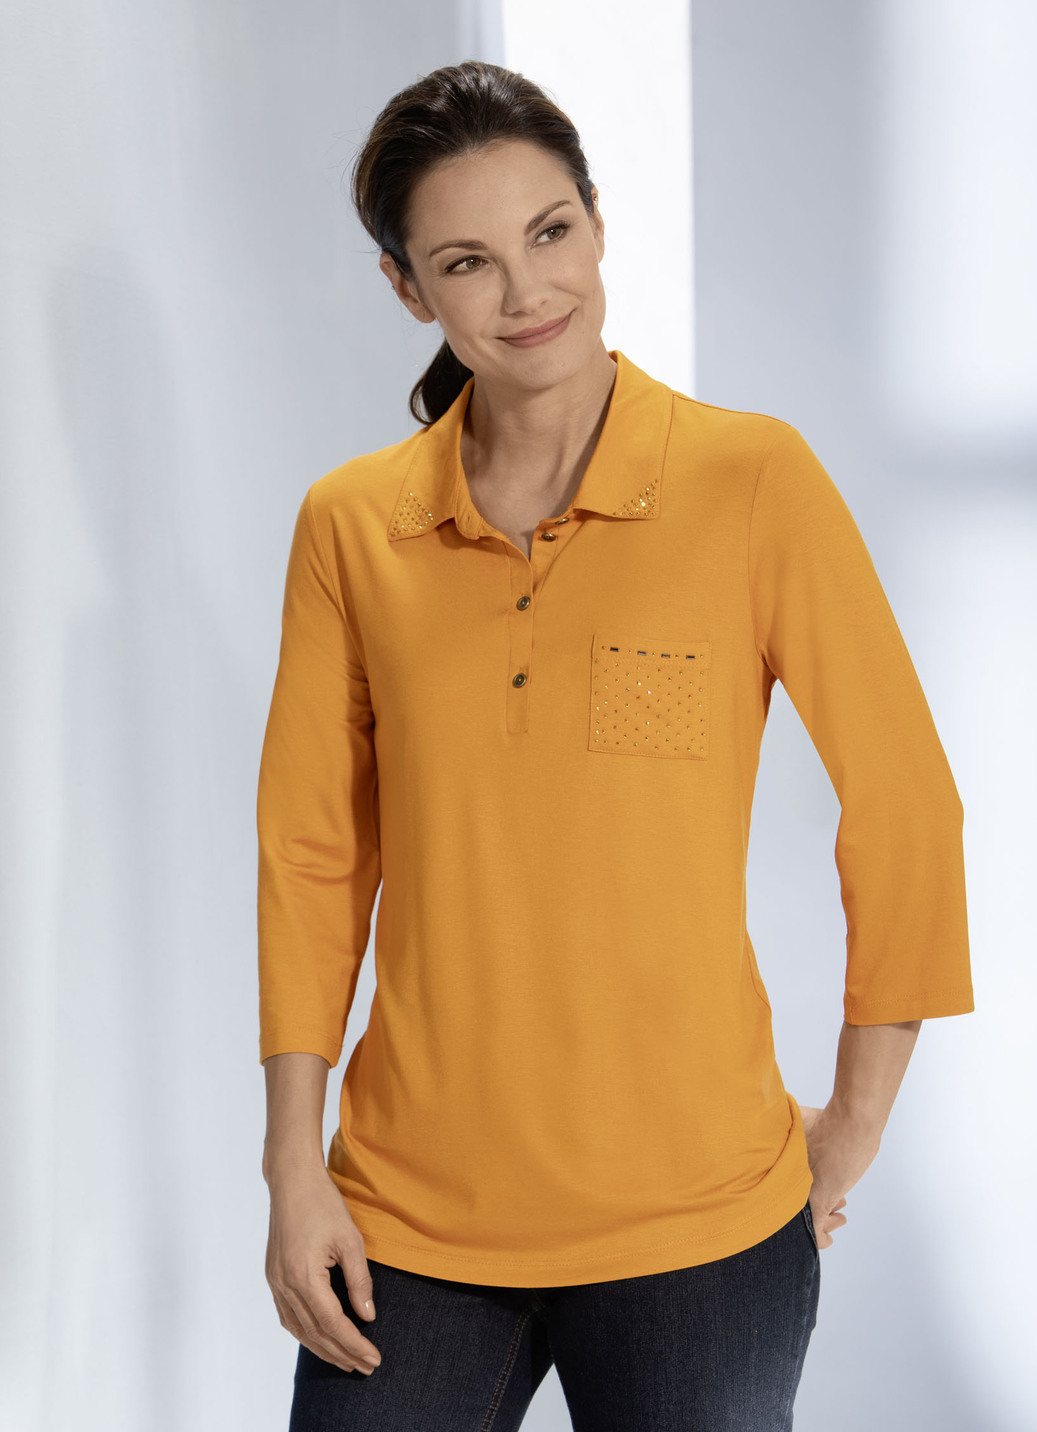 Poloshirt mit Strasszier am Polokragen in 3 Farben, Mandarine, Größe 36 von BADER